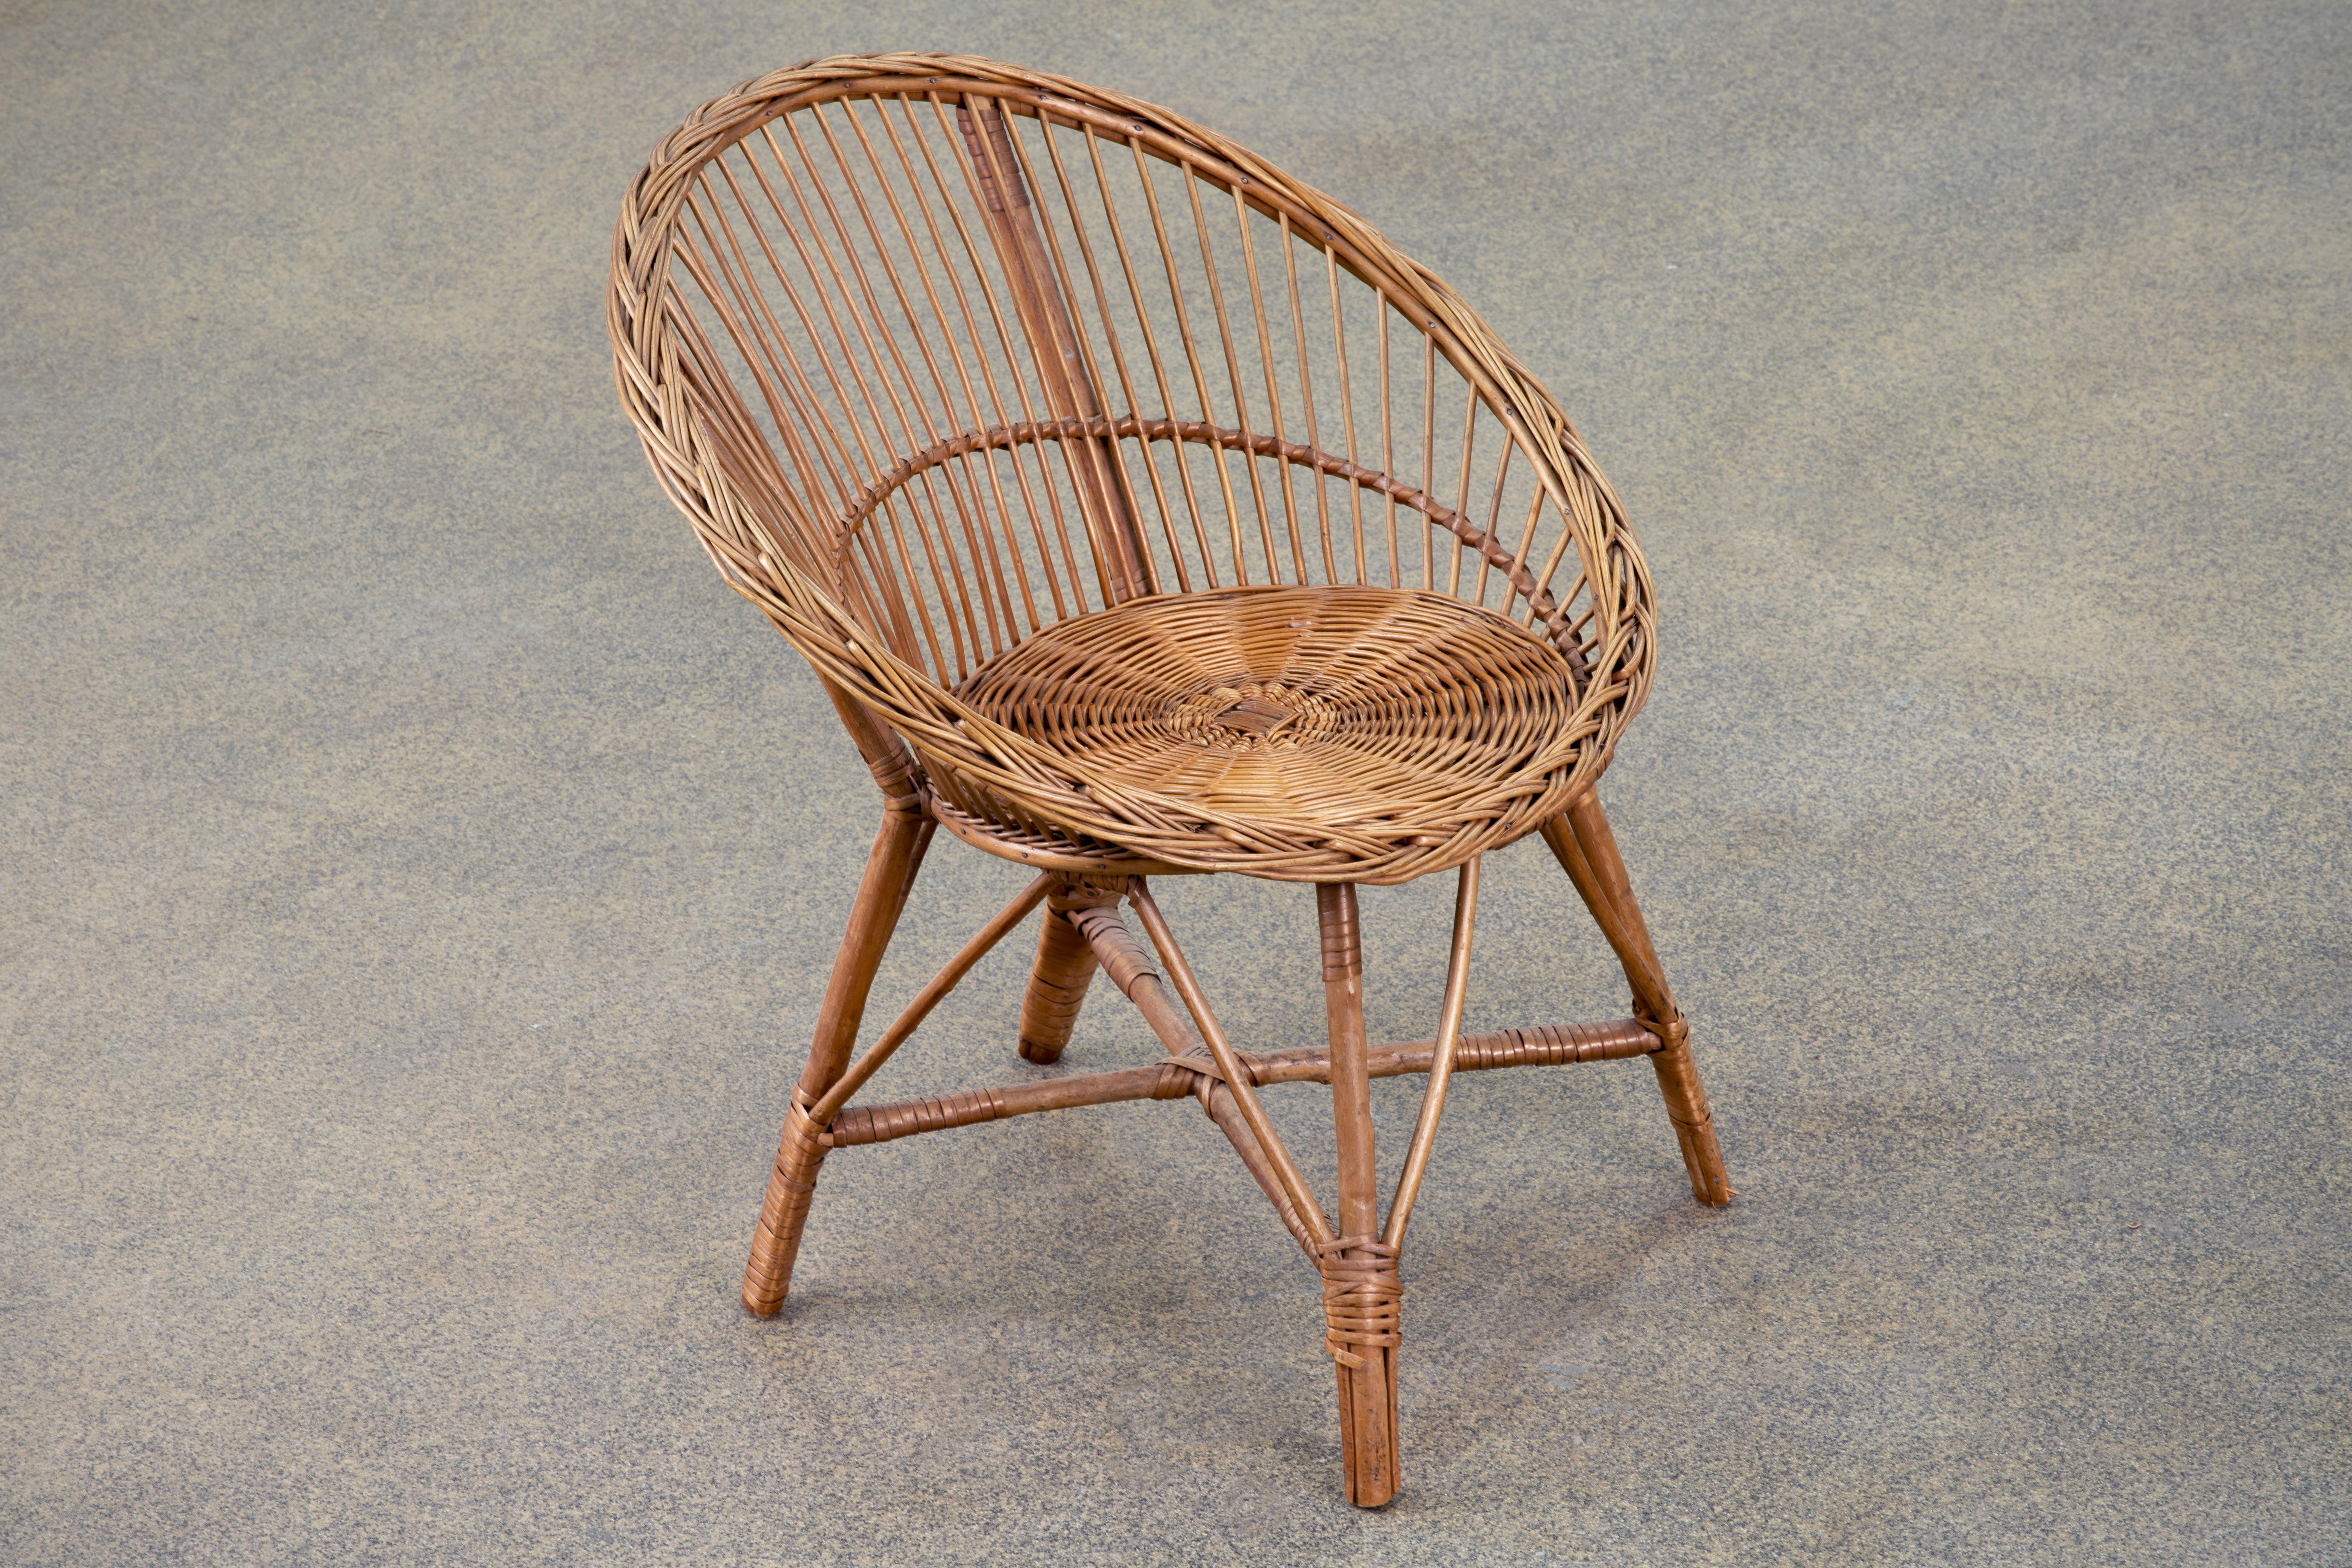 chaises longues en rotin de bambou surdimensionnées des années 1960 Fabriquées à la main dans le style moderne organique de la Côte d'Azur. Les chaises sont dotées d'un large cadre en rotin plié et de coussins bleus soyeux. Très confortable, avec